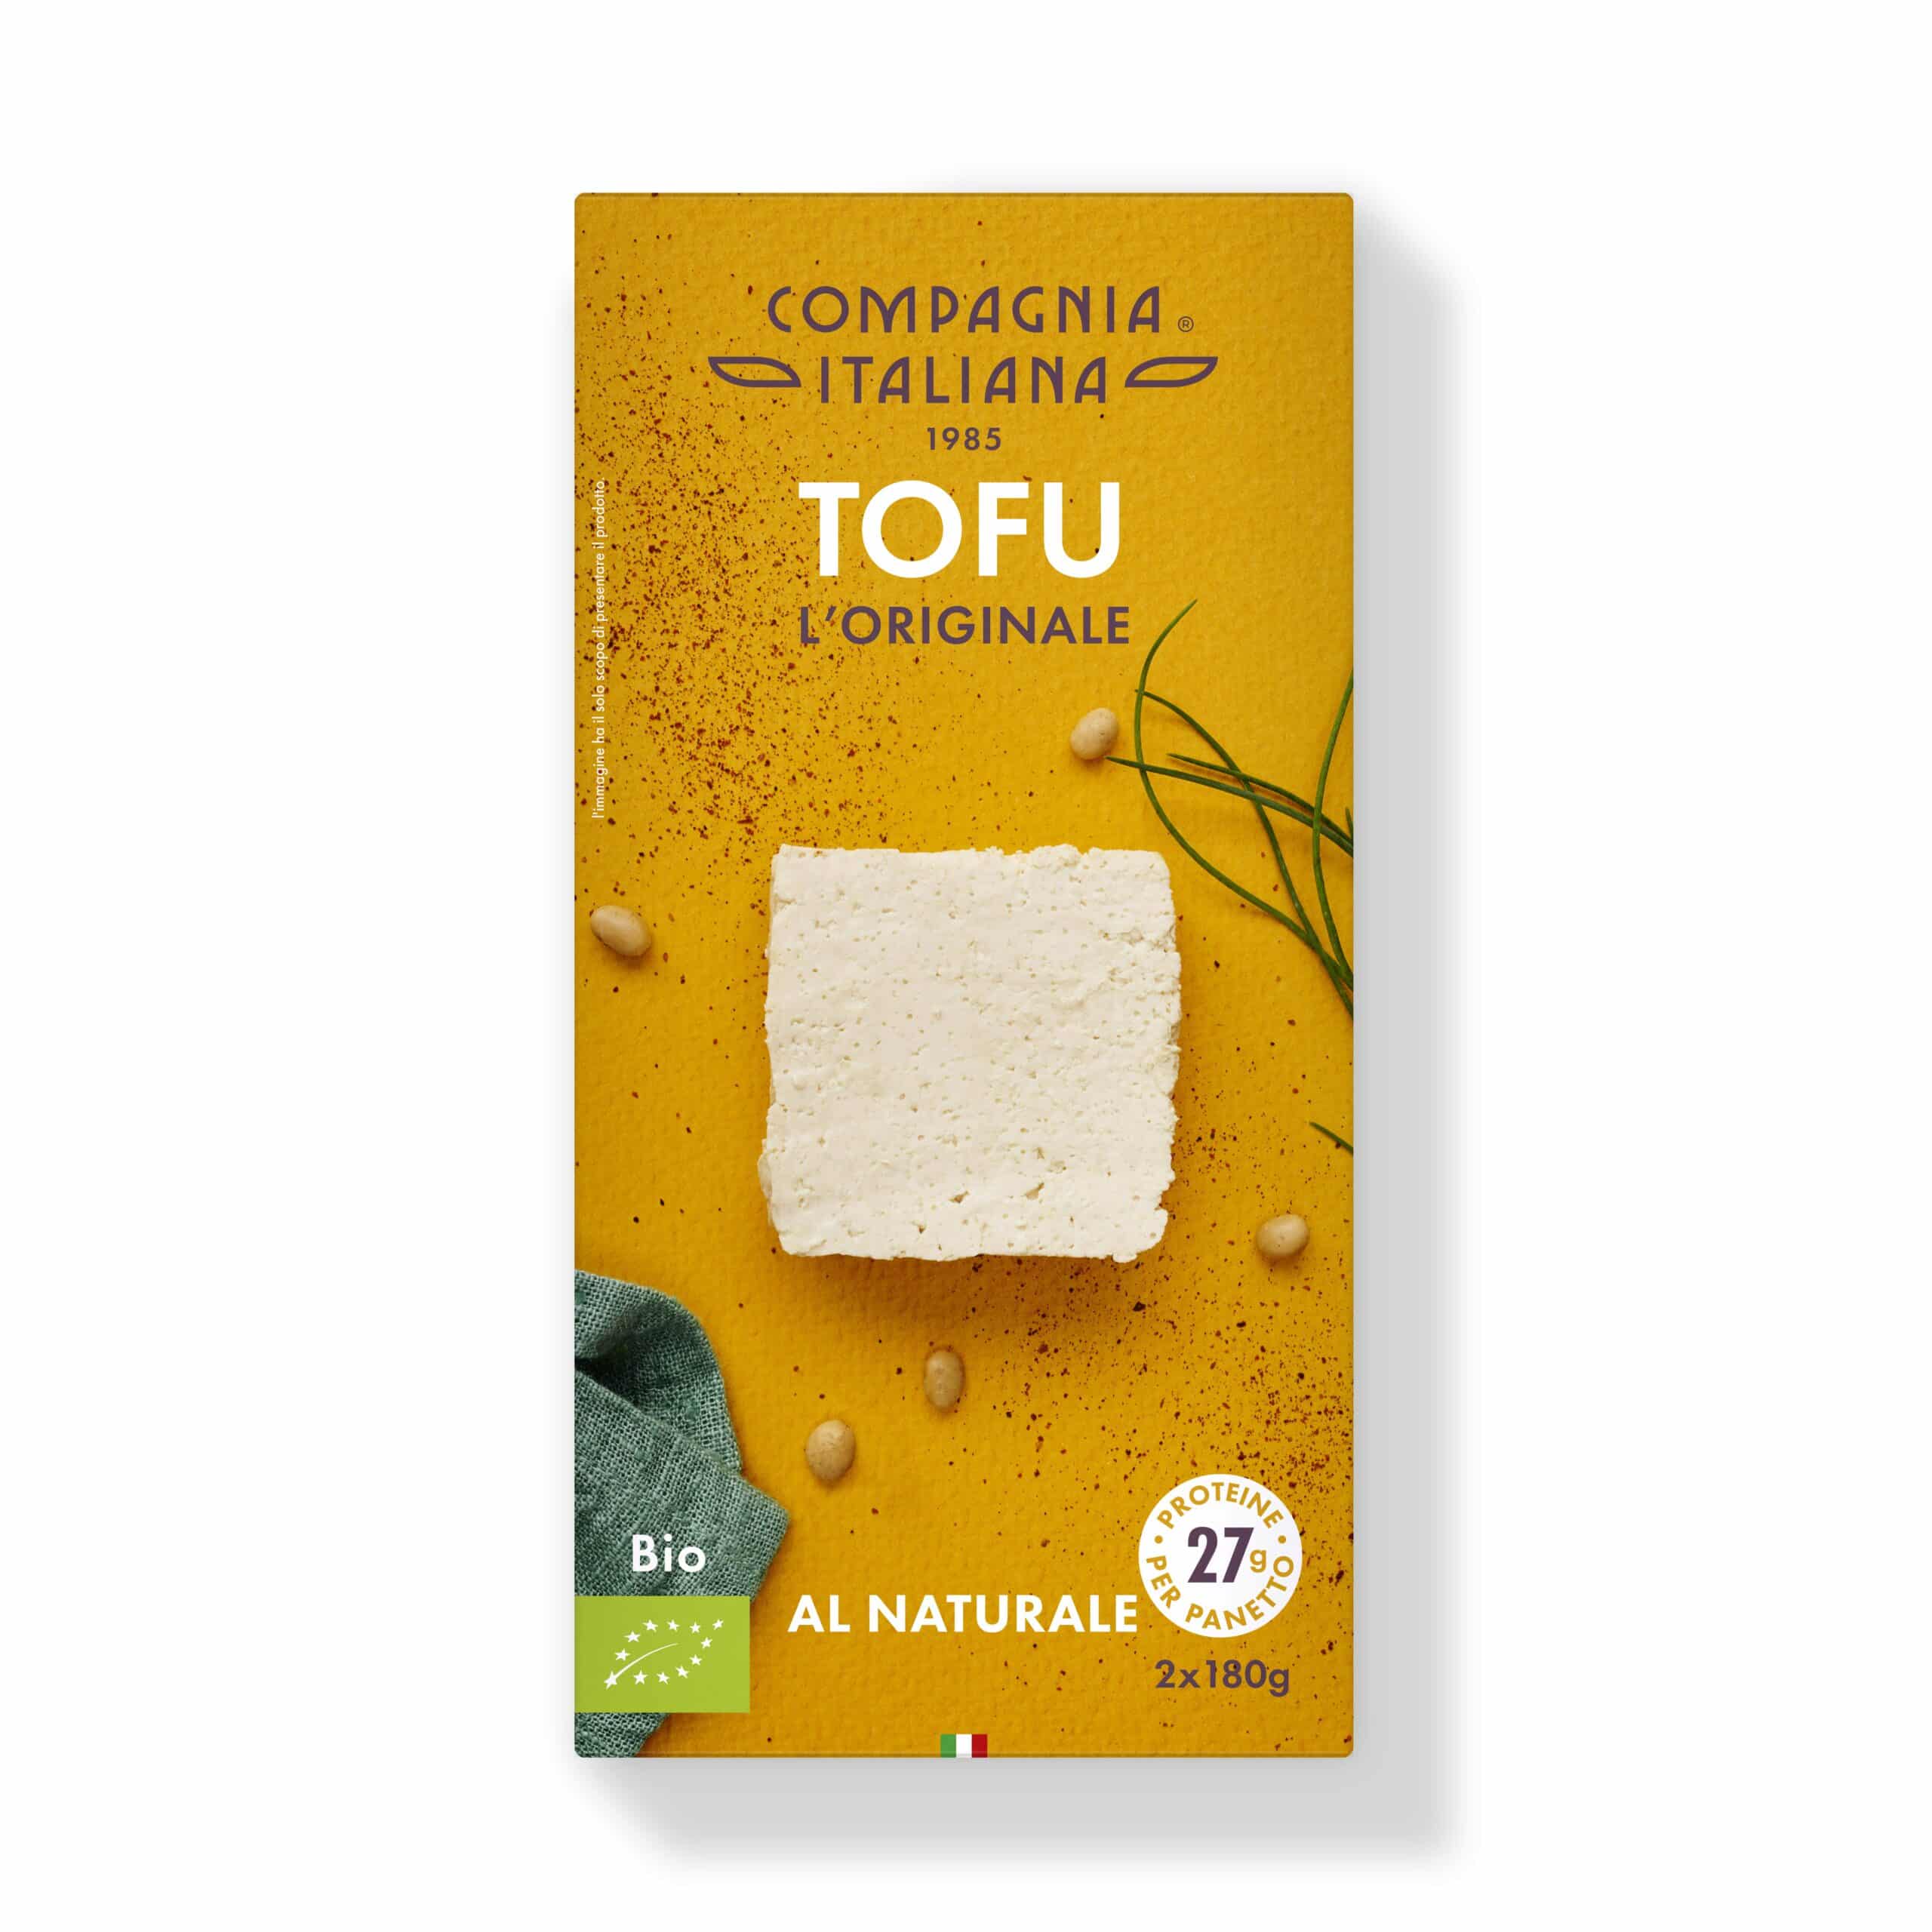 Tofu. L'originale - soffice, versatile e delicato - Compagnia Italiana